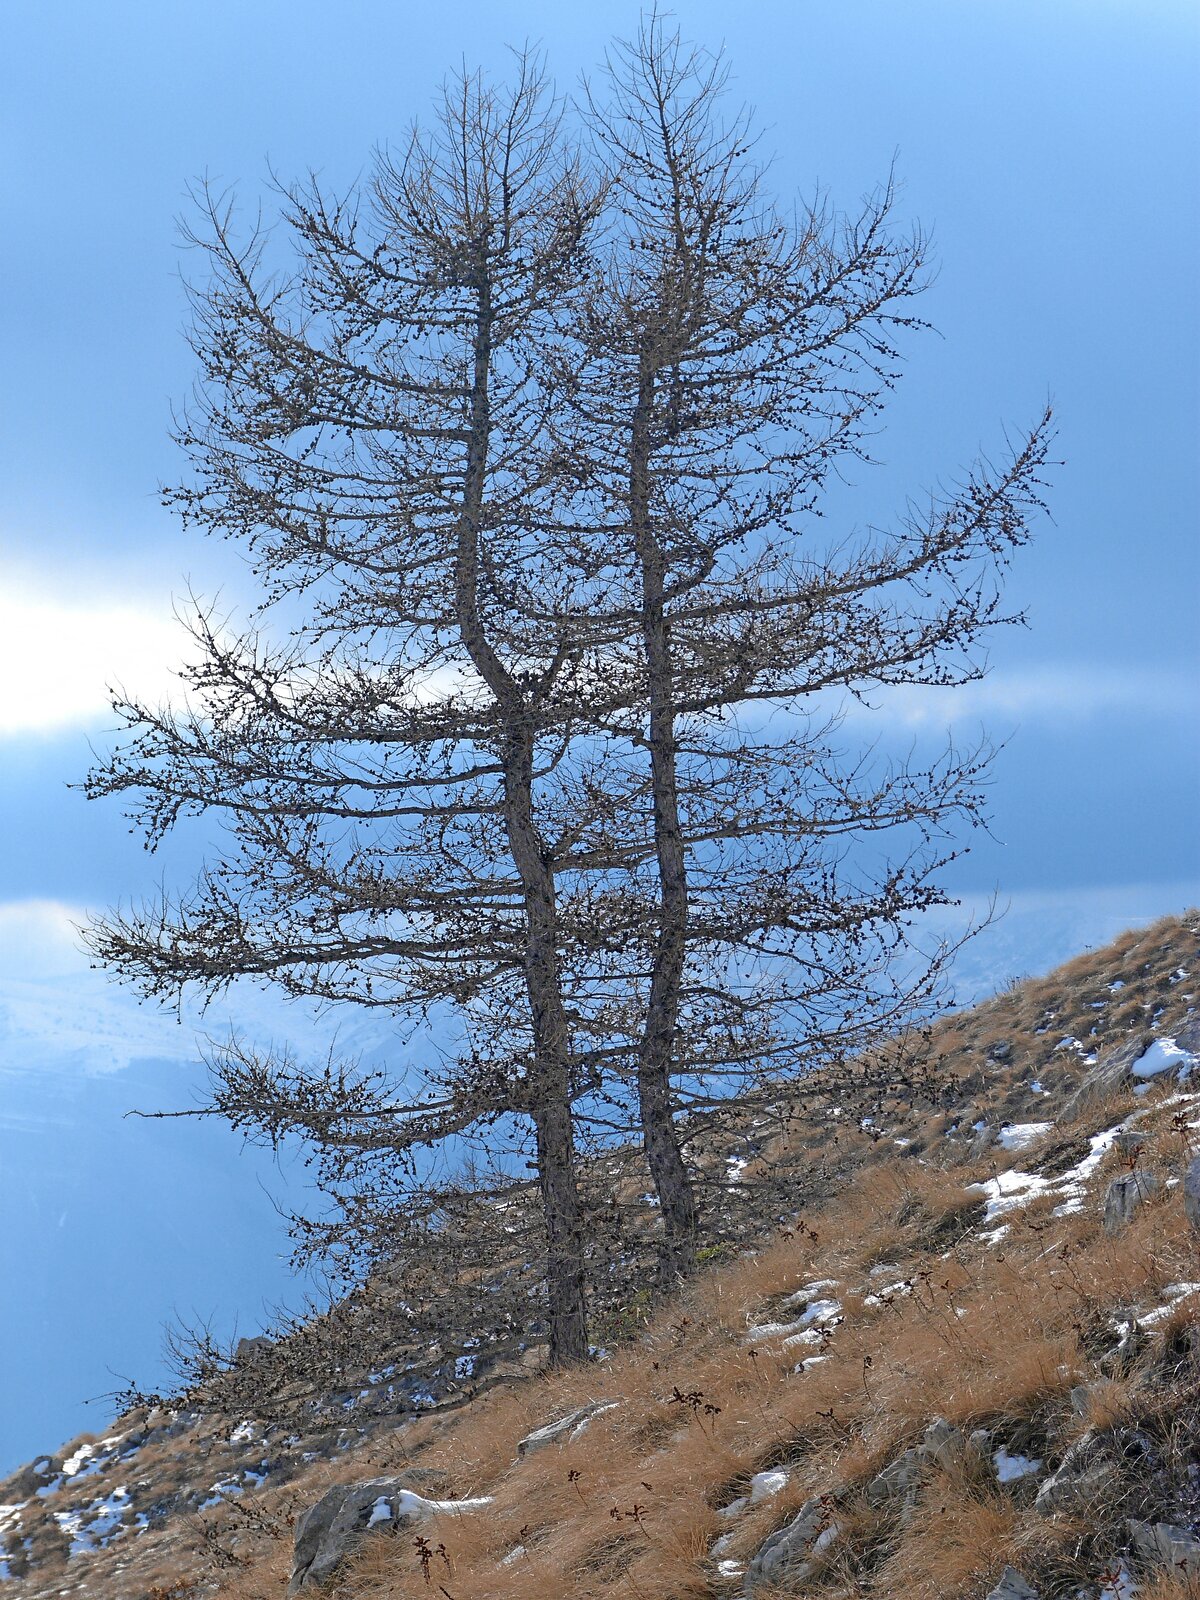 Fotografia modrzewia pozbawionego igieł. Drzewo jest zupełnie pozbawione liści. Drzewo ma jajowatą, rozłożystą koronę, co wskazuje na gatunek.